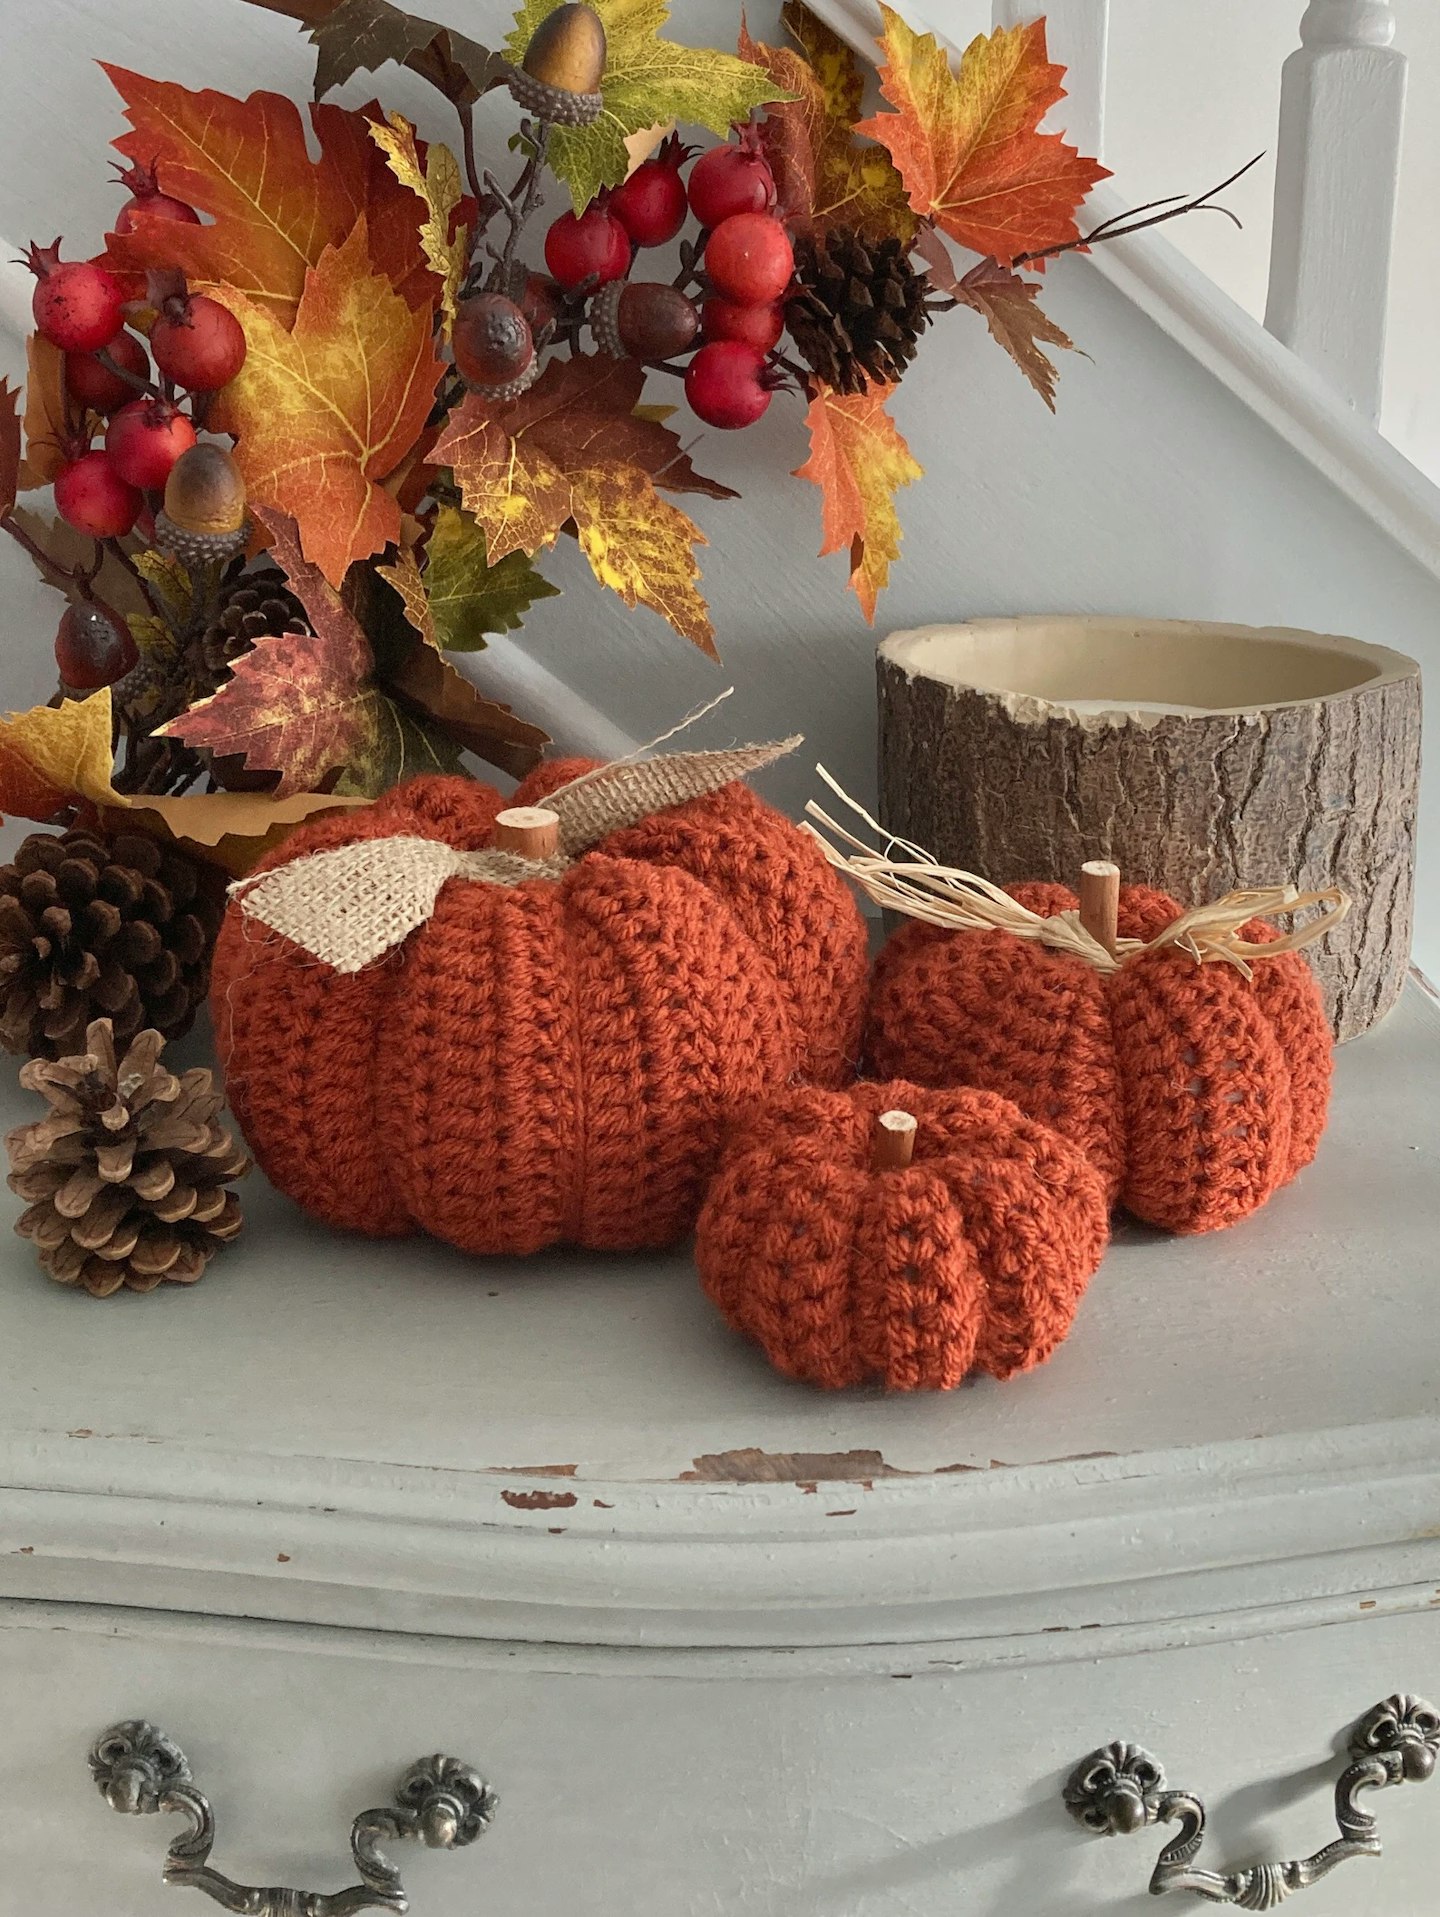 Handmade crochet pumpkins